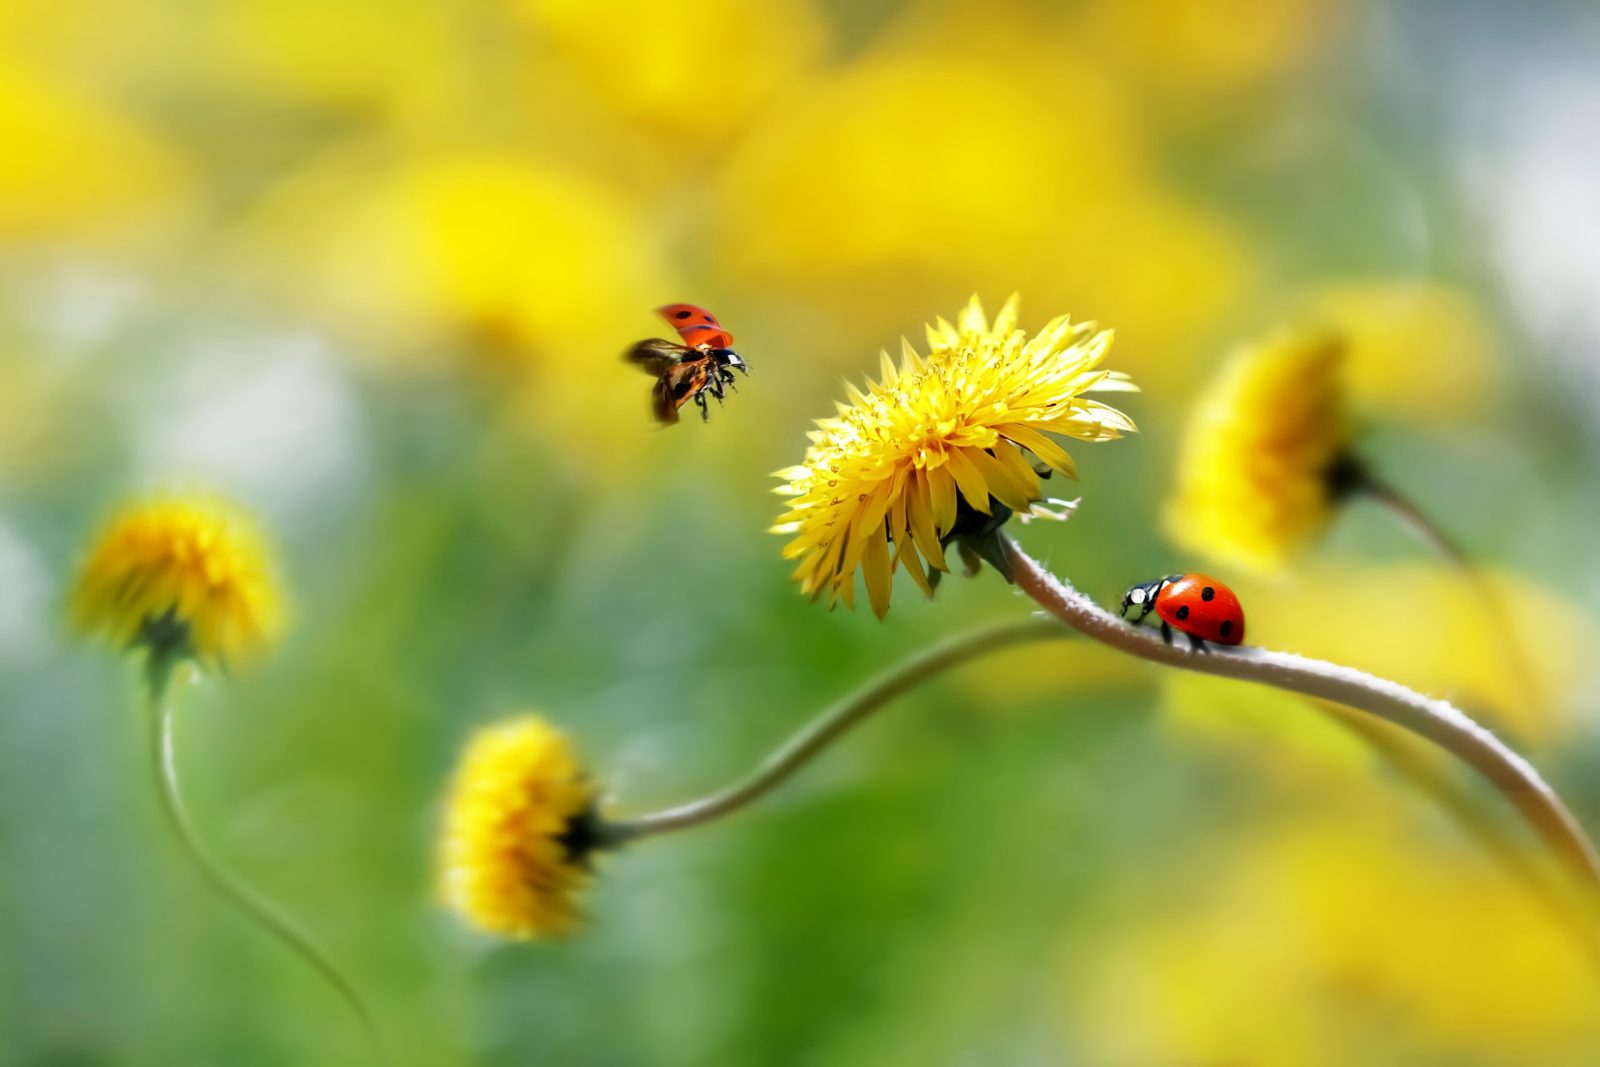 two ladybugs flying around yellow flowers